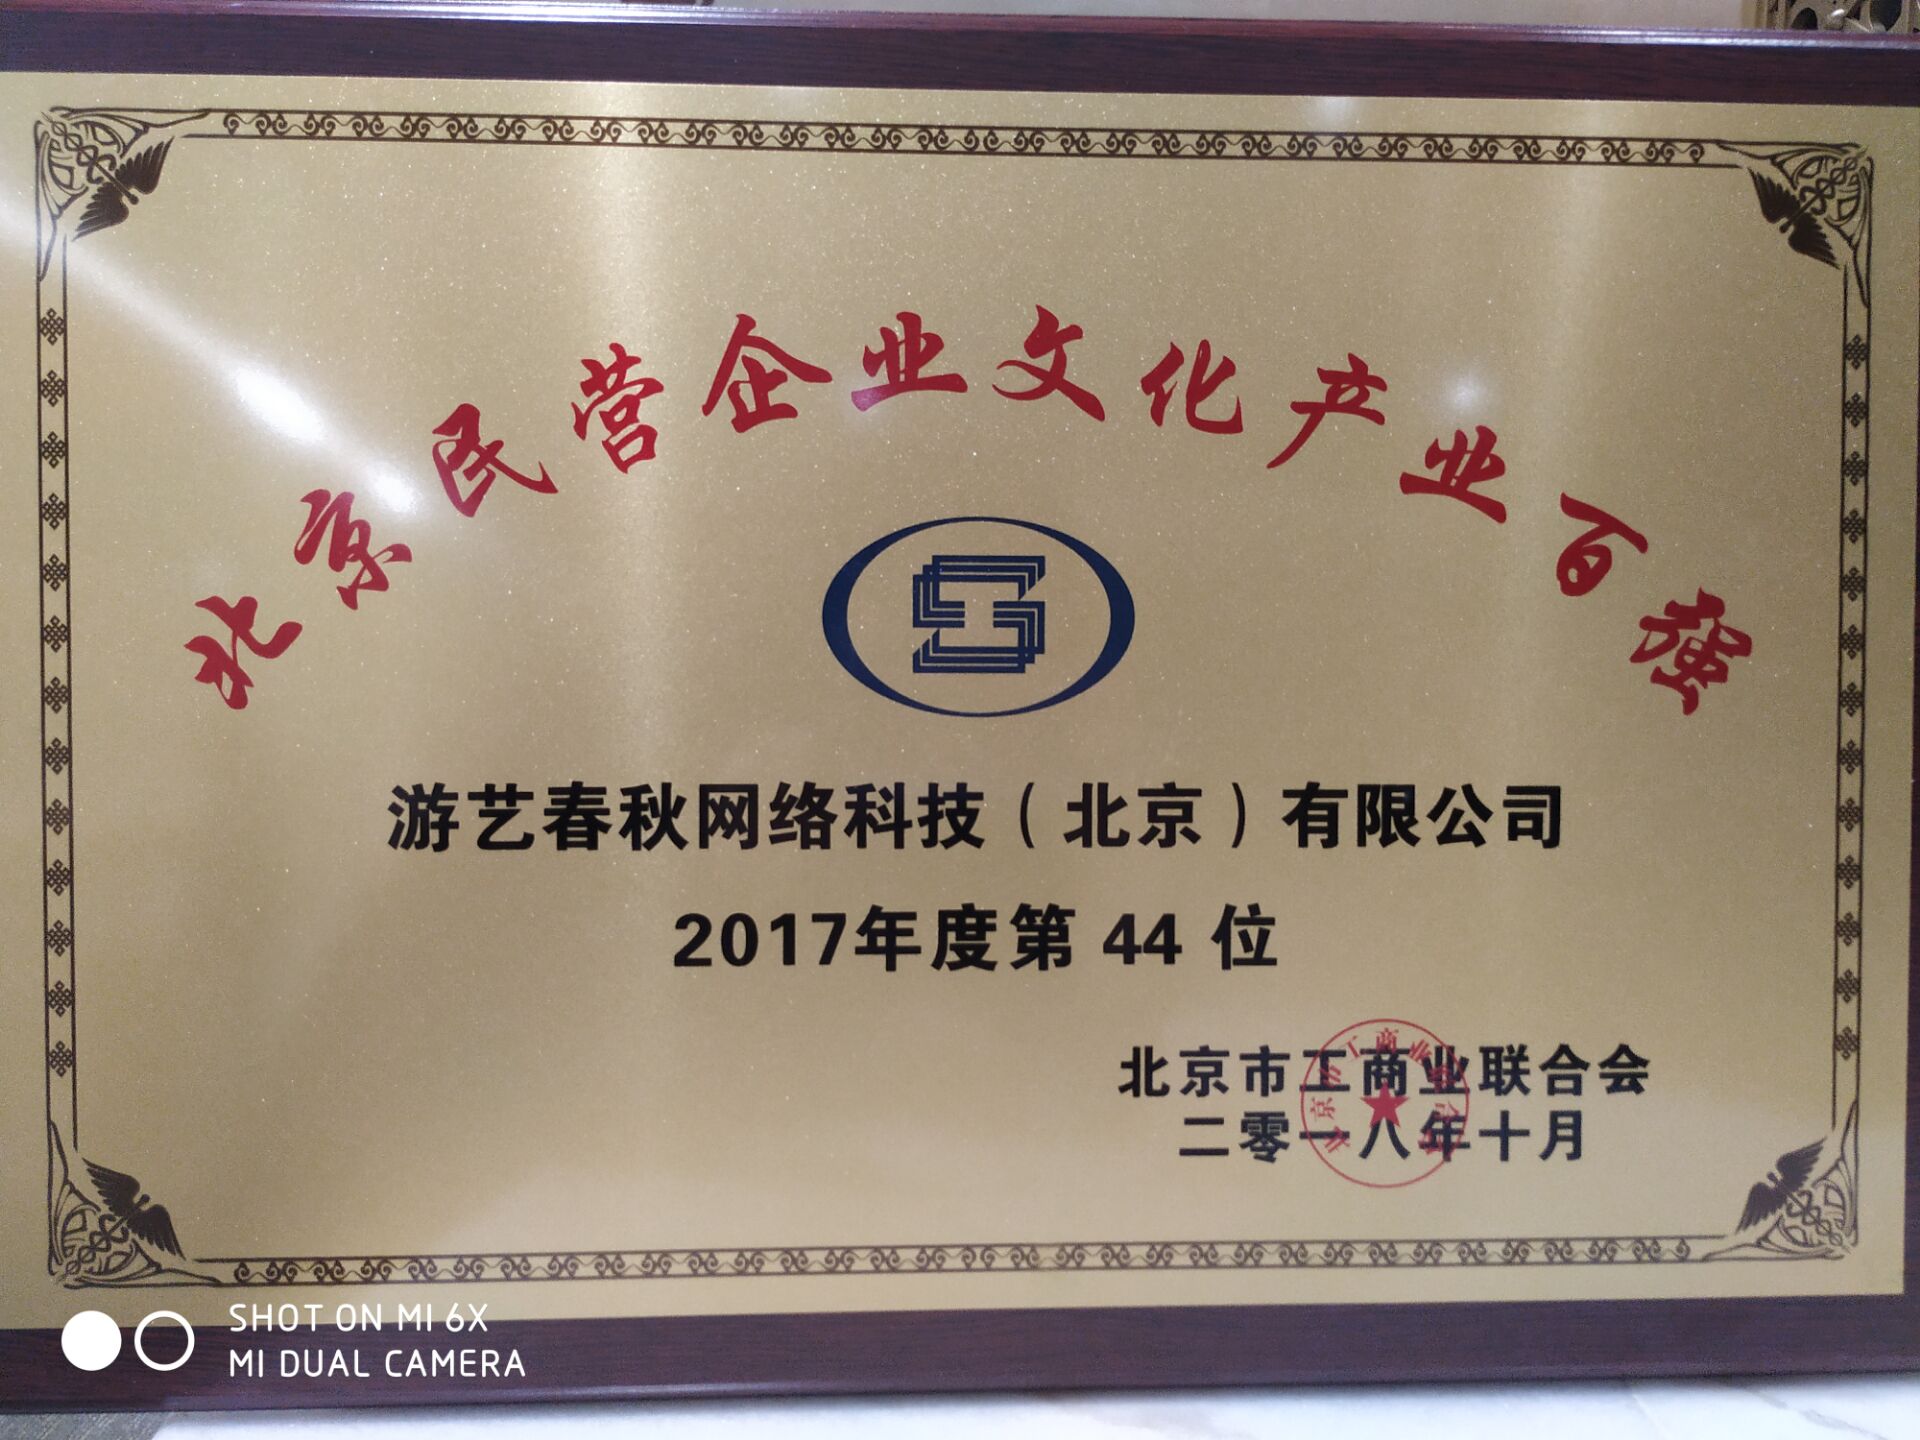 游艺春秋荣获2018年北京民营企业文化产业百强